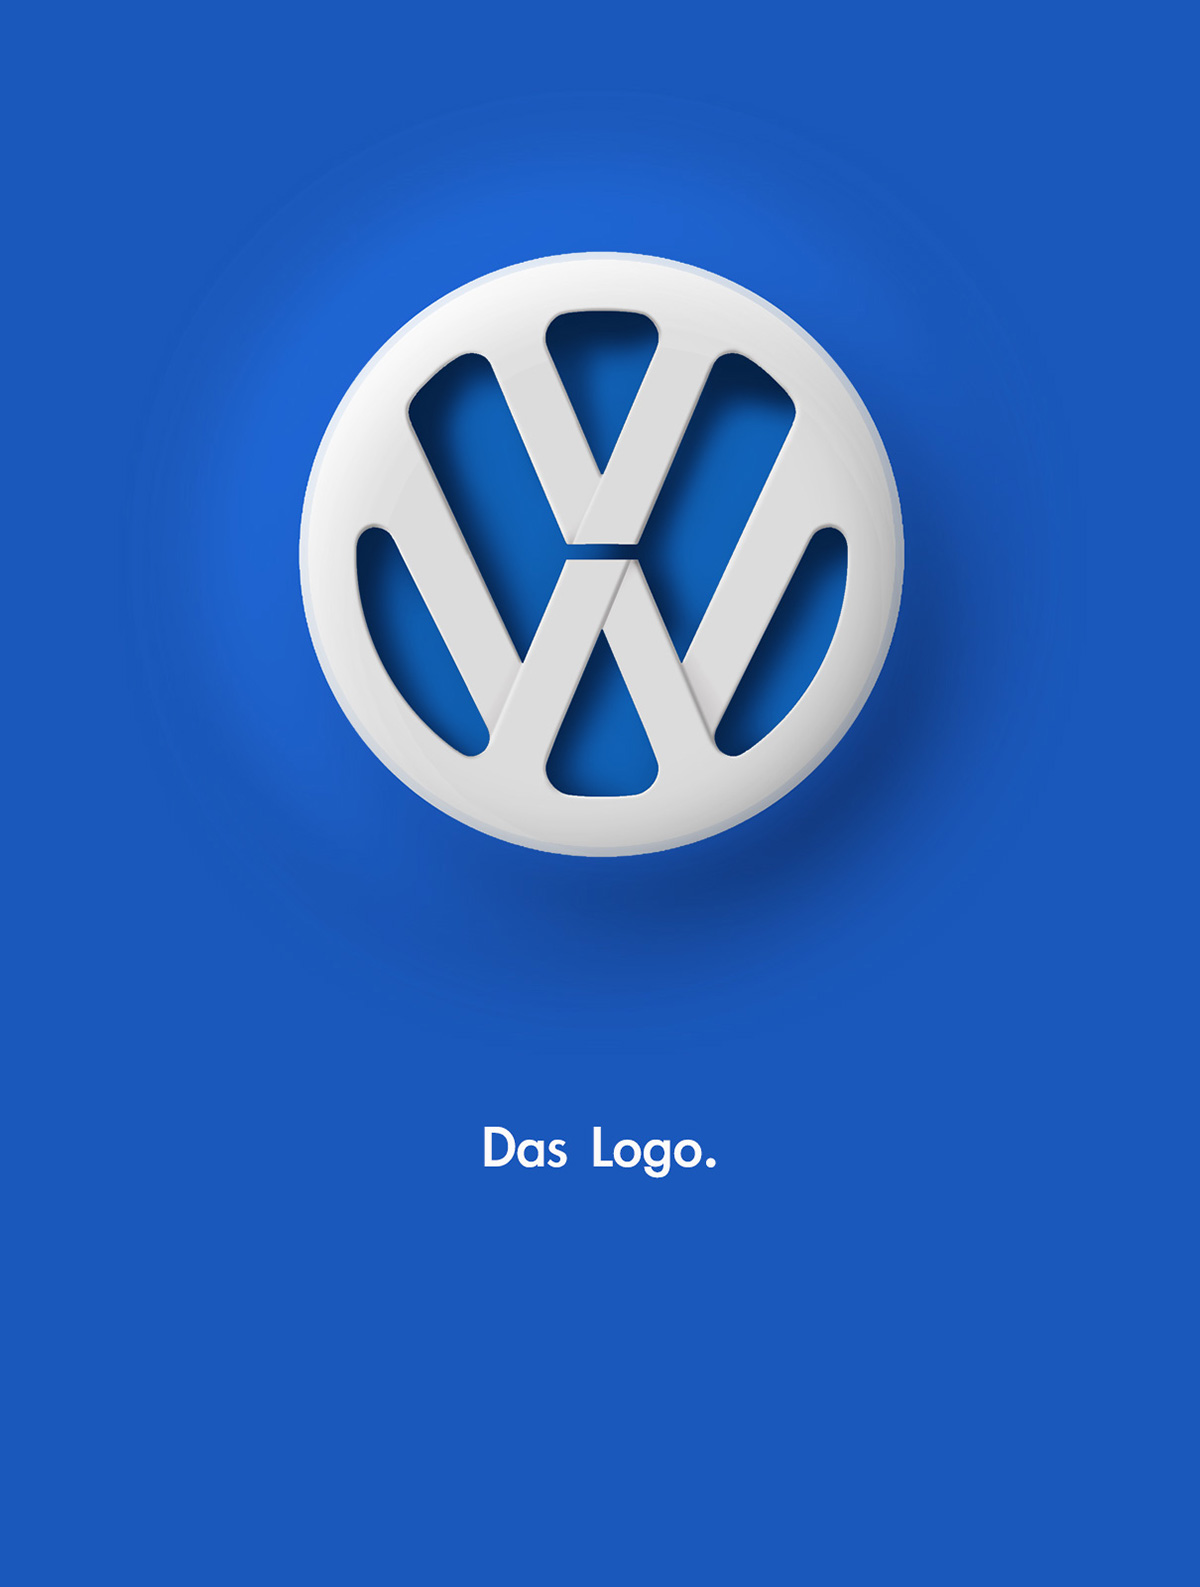 Logo VW 3D print poster VW rebranding logo